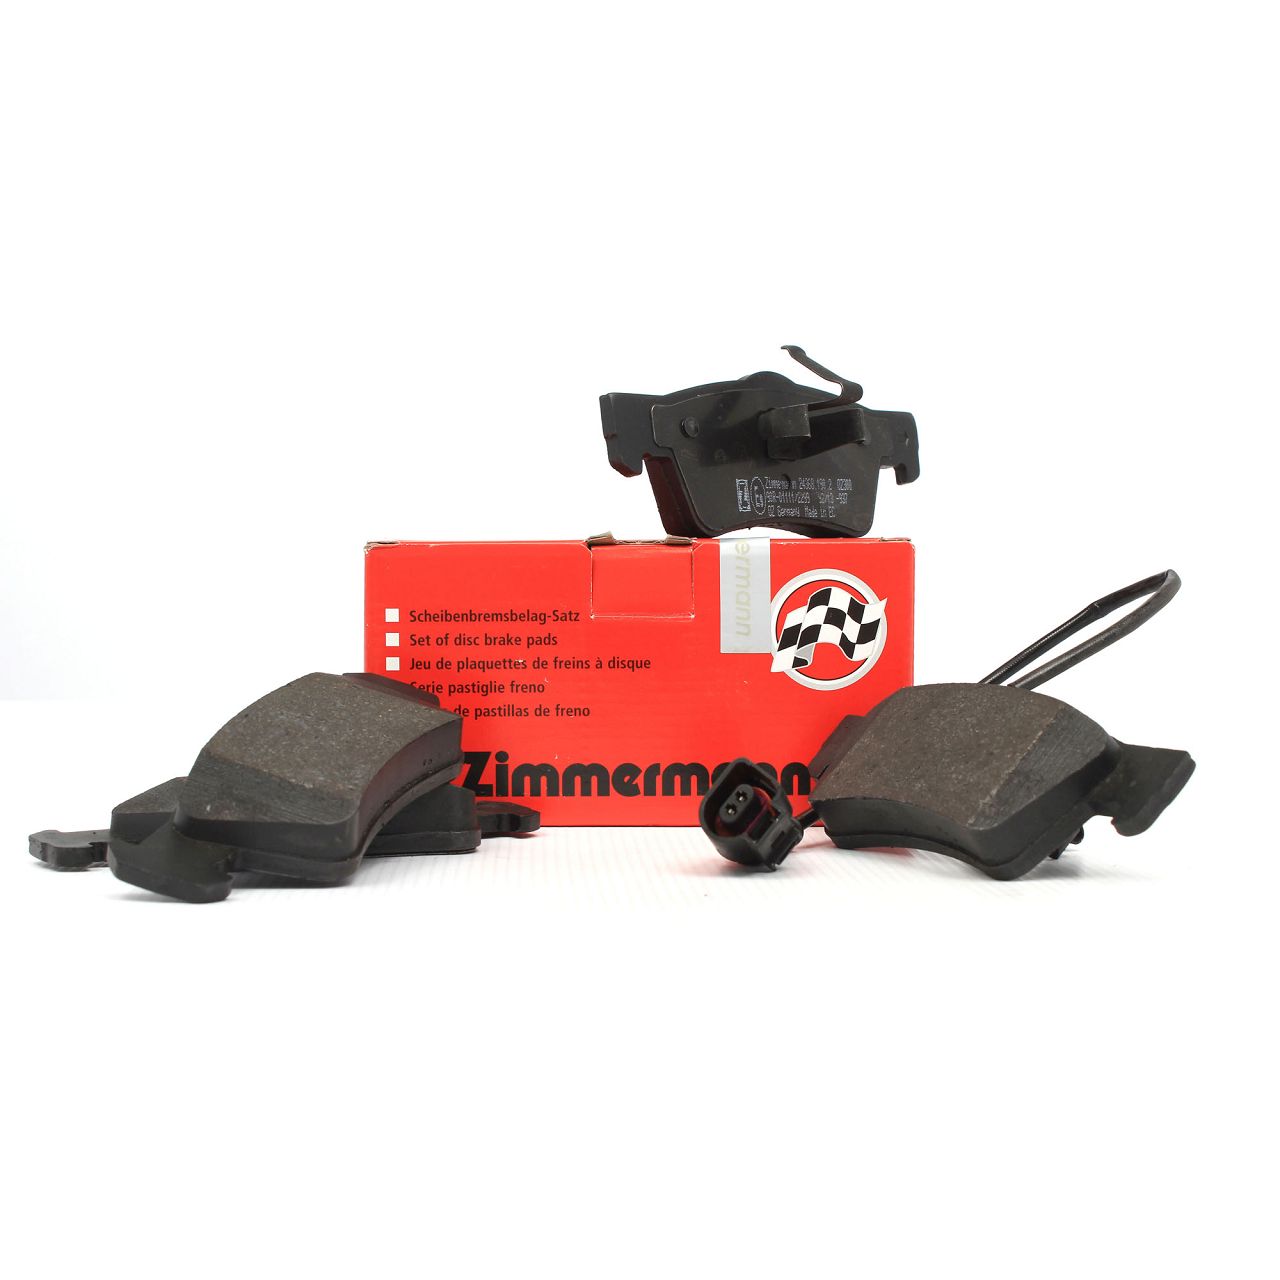 ZIMMERMANN Bremsbeläge Bremsklötze + Wako für VW Multivan Transporter T5 hinten